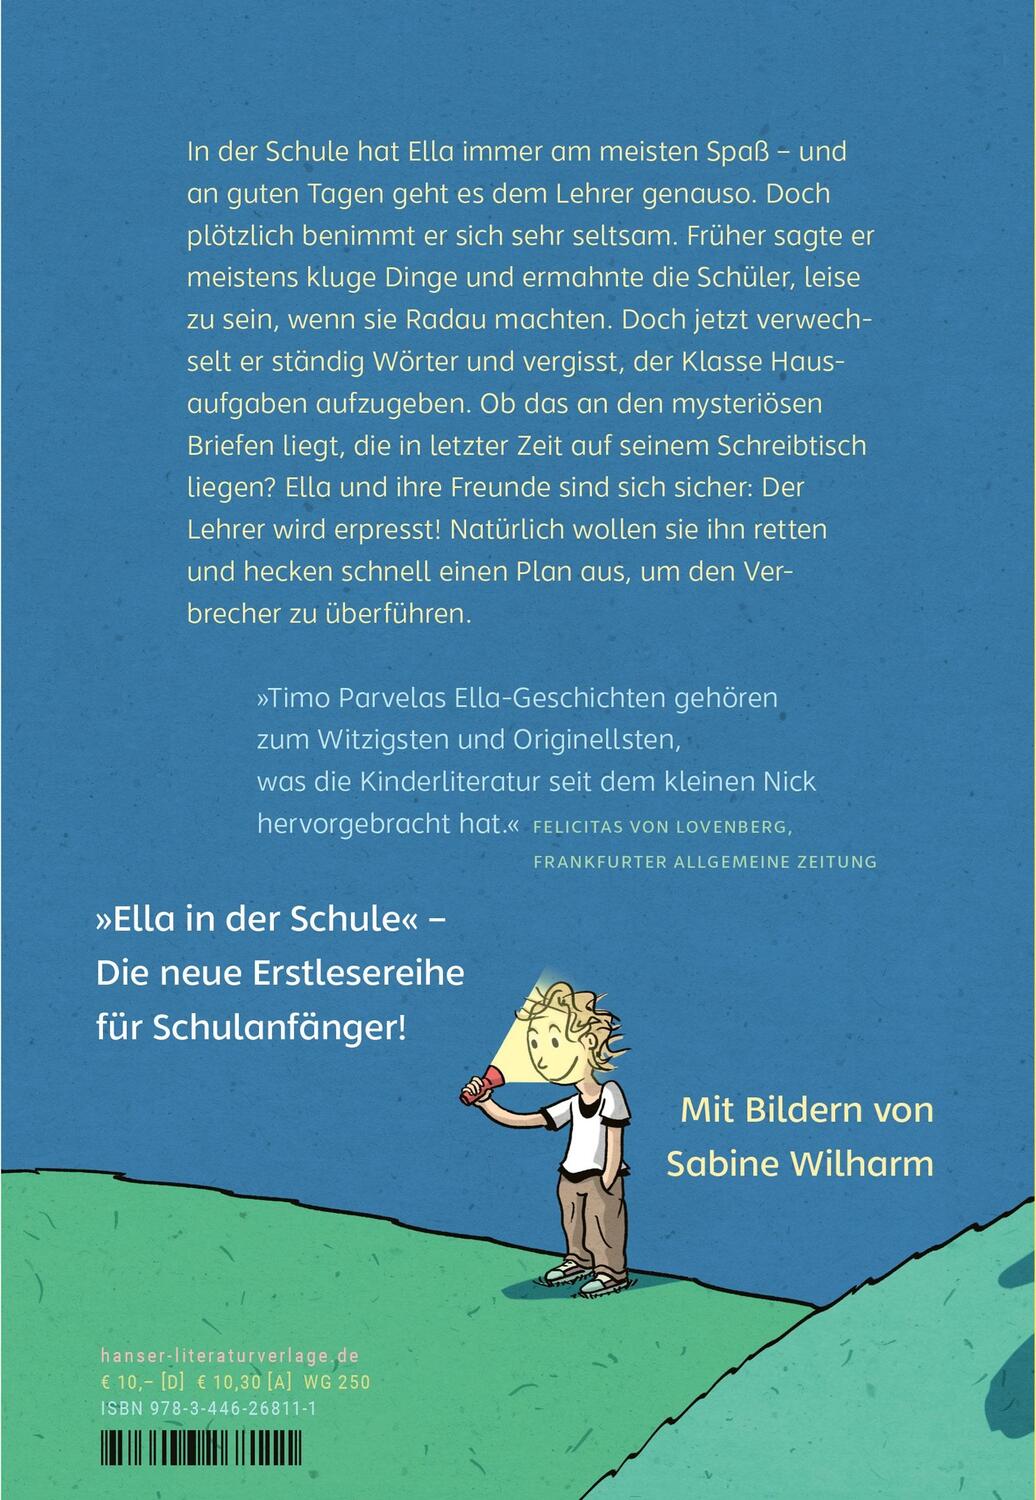 Bild: 9783446268111 | Ella in der Schule - Abenteuer Schulanfang | Timo Parvela | Buch